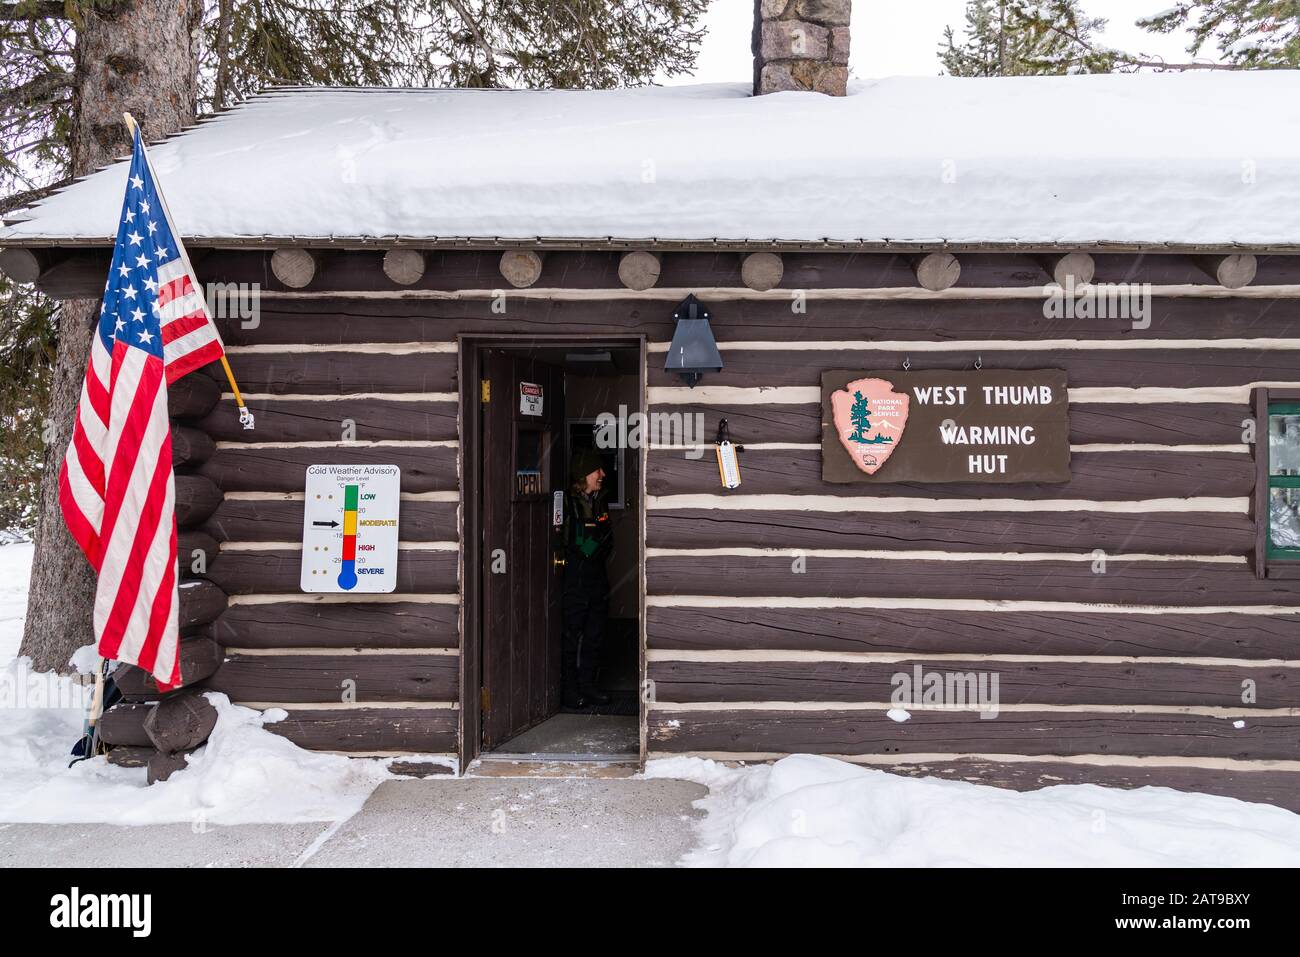 Parker ranger ouvre la porte pour accueillir les visiteurs de la cabane De Réchauffement de la main Ouest en hiver. Yellowstone National Park, Wyoming, États-Unis Banque D'Images